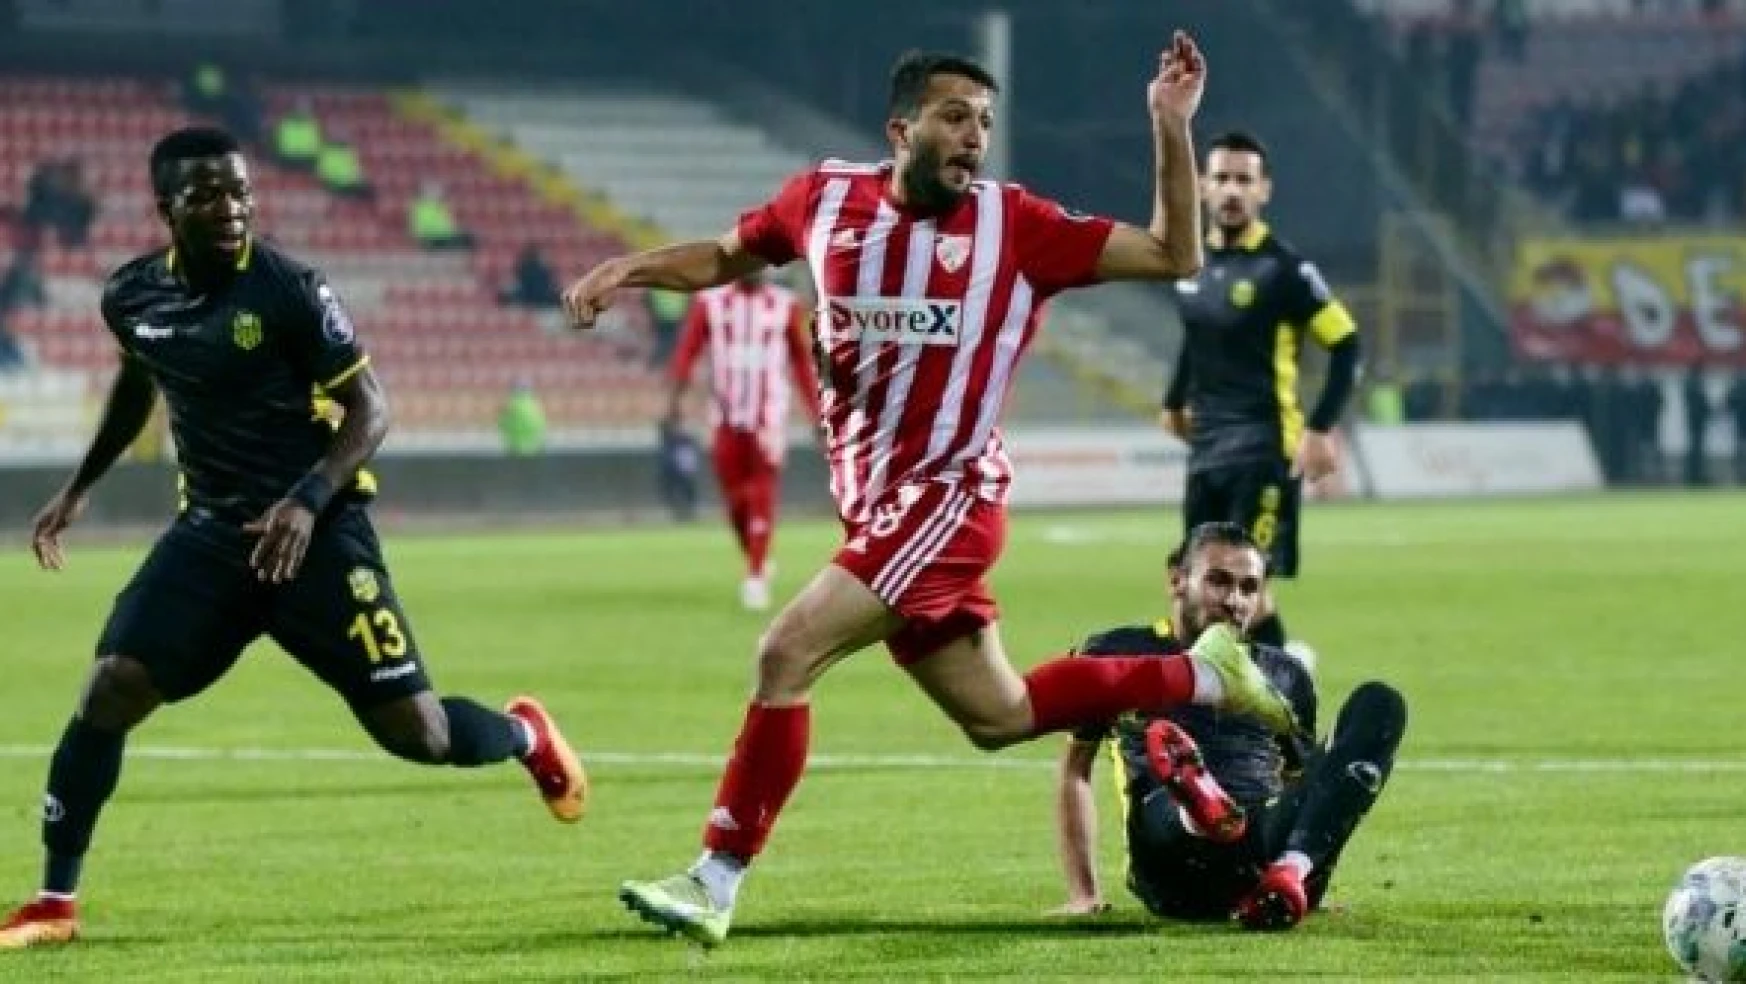 Dyorex Boluspor: 1 - Yeni Malatyaspor: 0